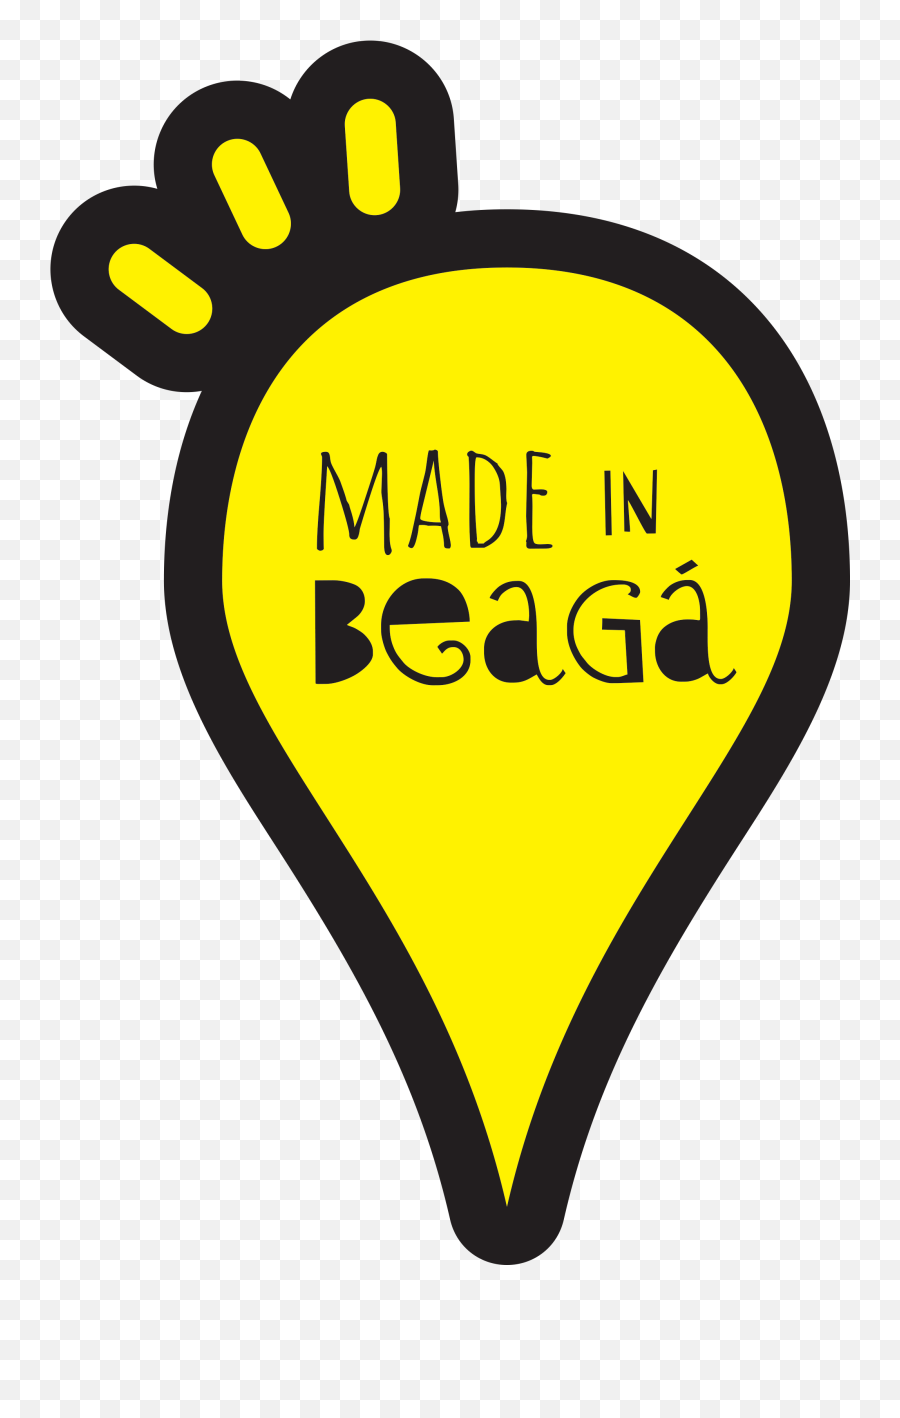 Camiseta Ícones U2013 Made In Beagá - Language Emoji,Emoticons Capeta